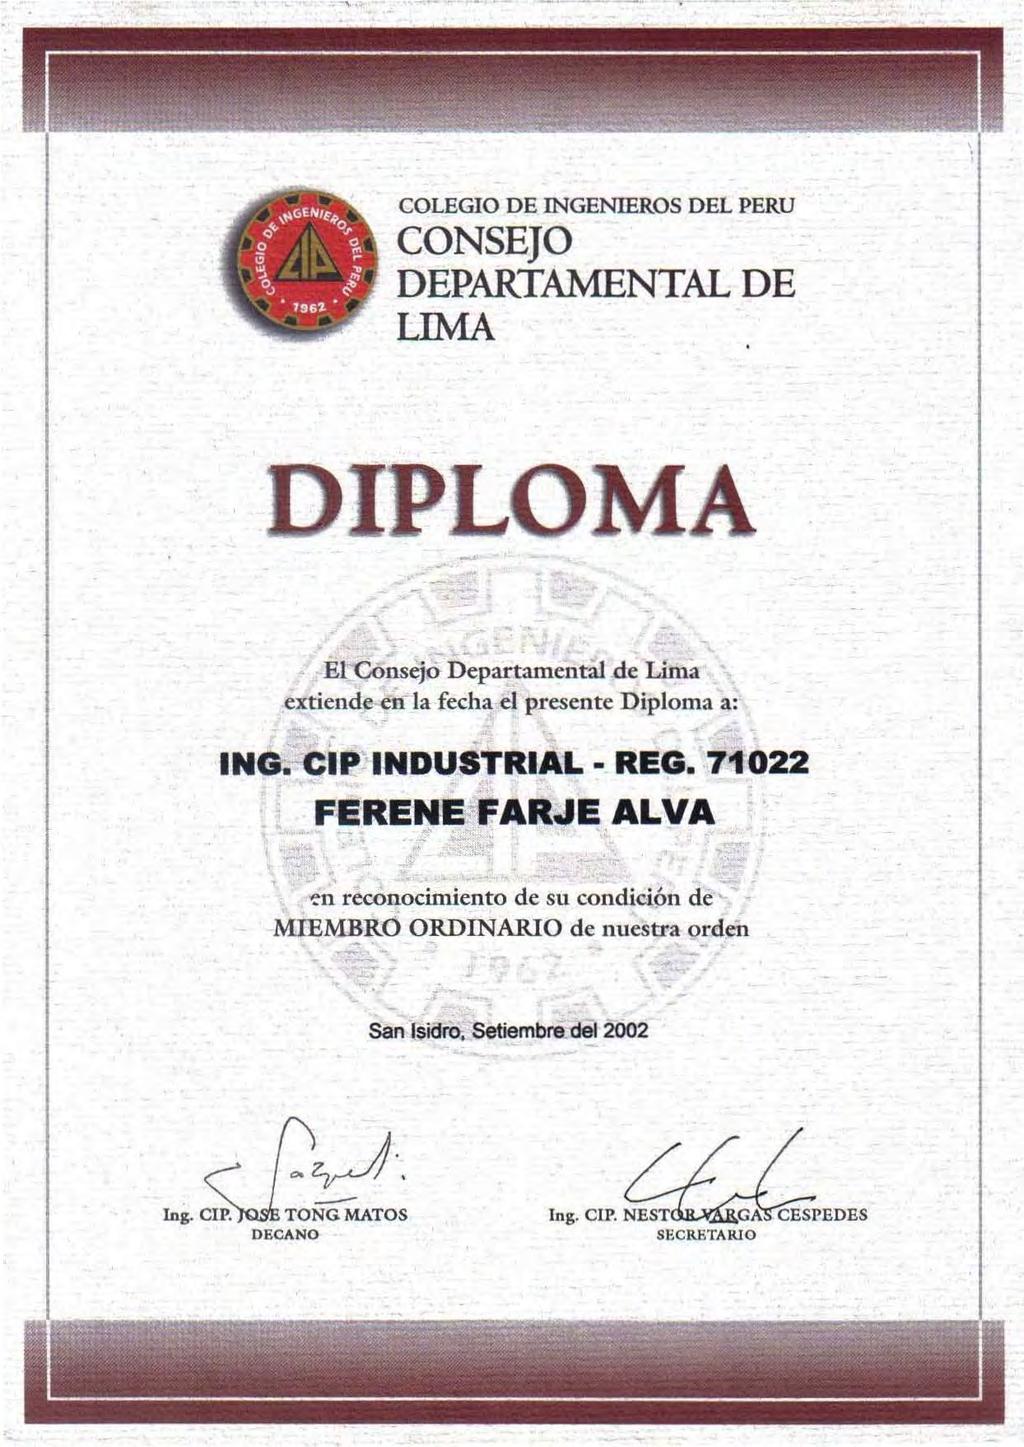 , COLEGIO DE INGENIEROS DEL PERU CONSEJO DEPARTAMENTAL DE LIMA LO - - ElCónsejó Departamental de Lima extiende en la fecha el presente Diploma a:. ING. CIP INDUSTRIAL - REG. 71022 FERENE-FAR.